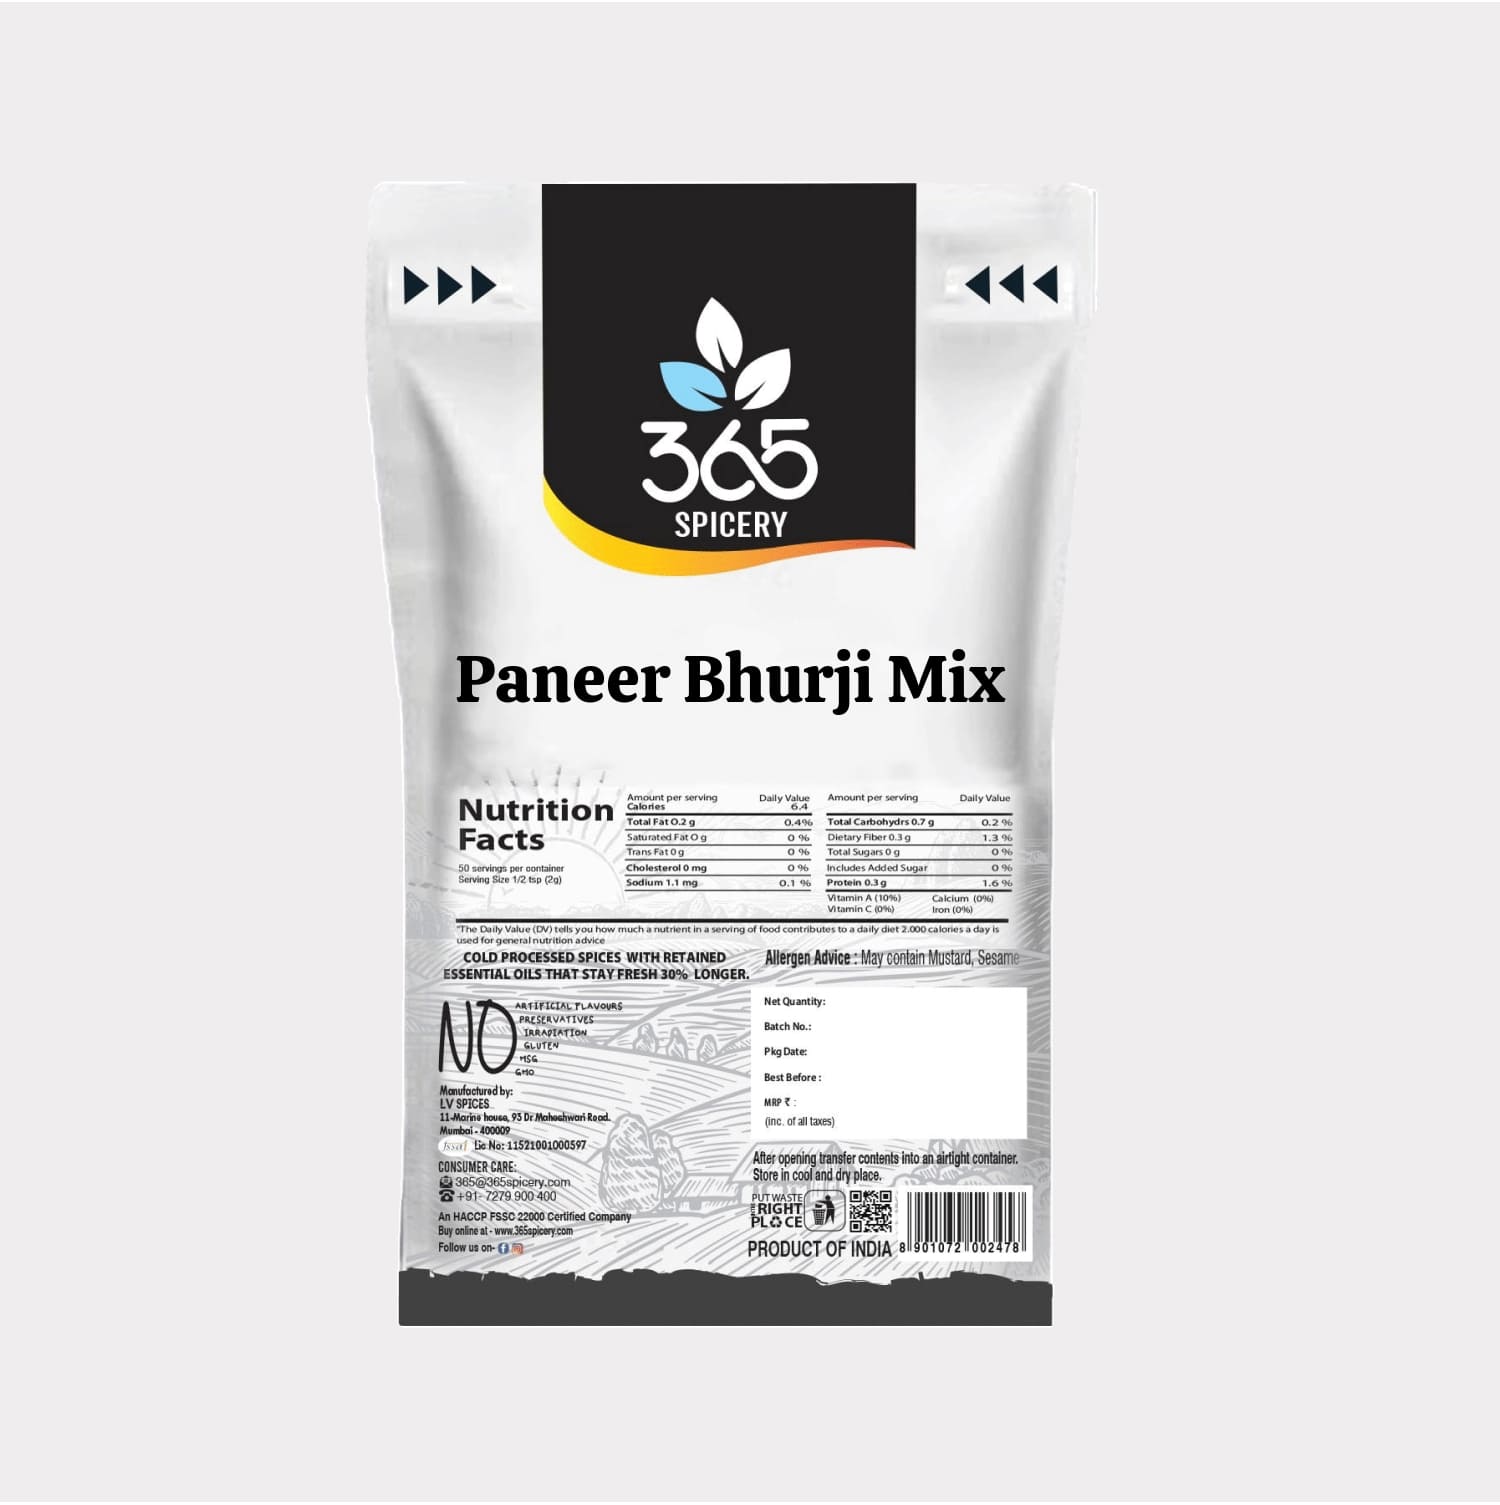 Paneer Bhurji Mix